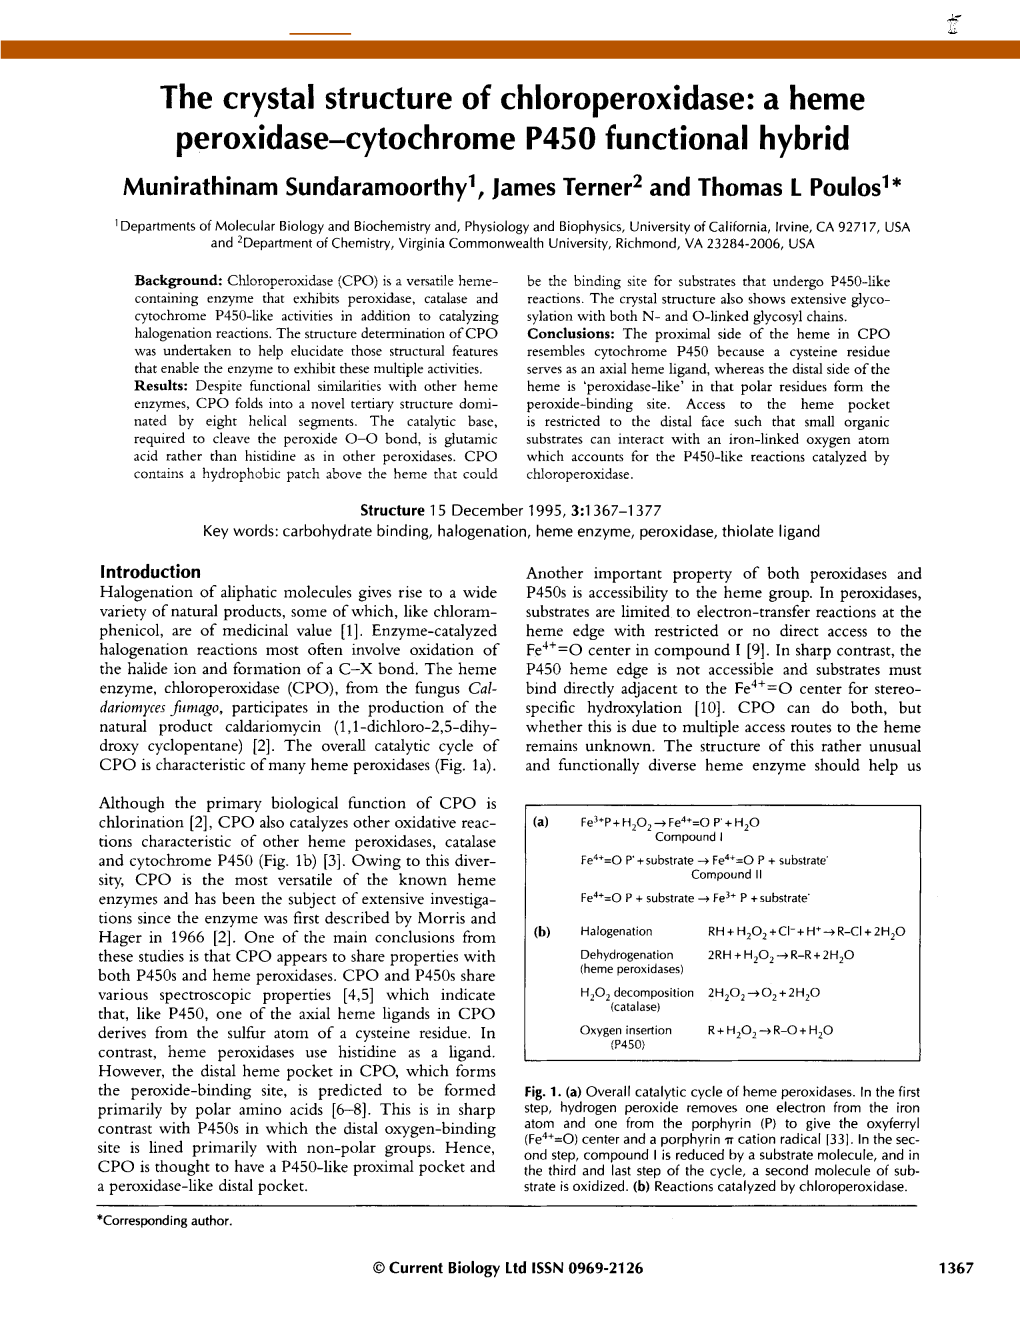 The Crystal Structure of Chloroperoxidase: a Heme Peroxidase-Cytochrome P450 Functional Hybrid Munirathinam Sundaramoorthy', James Terner 2 and Thomas L Poulosl*